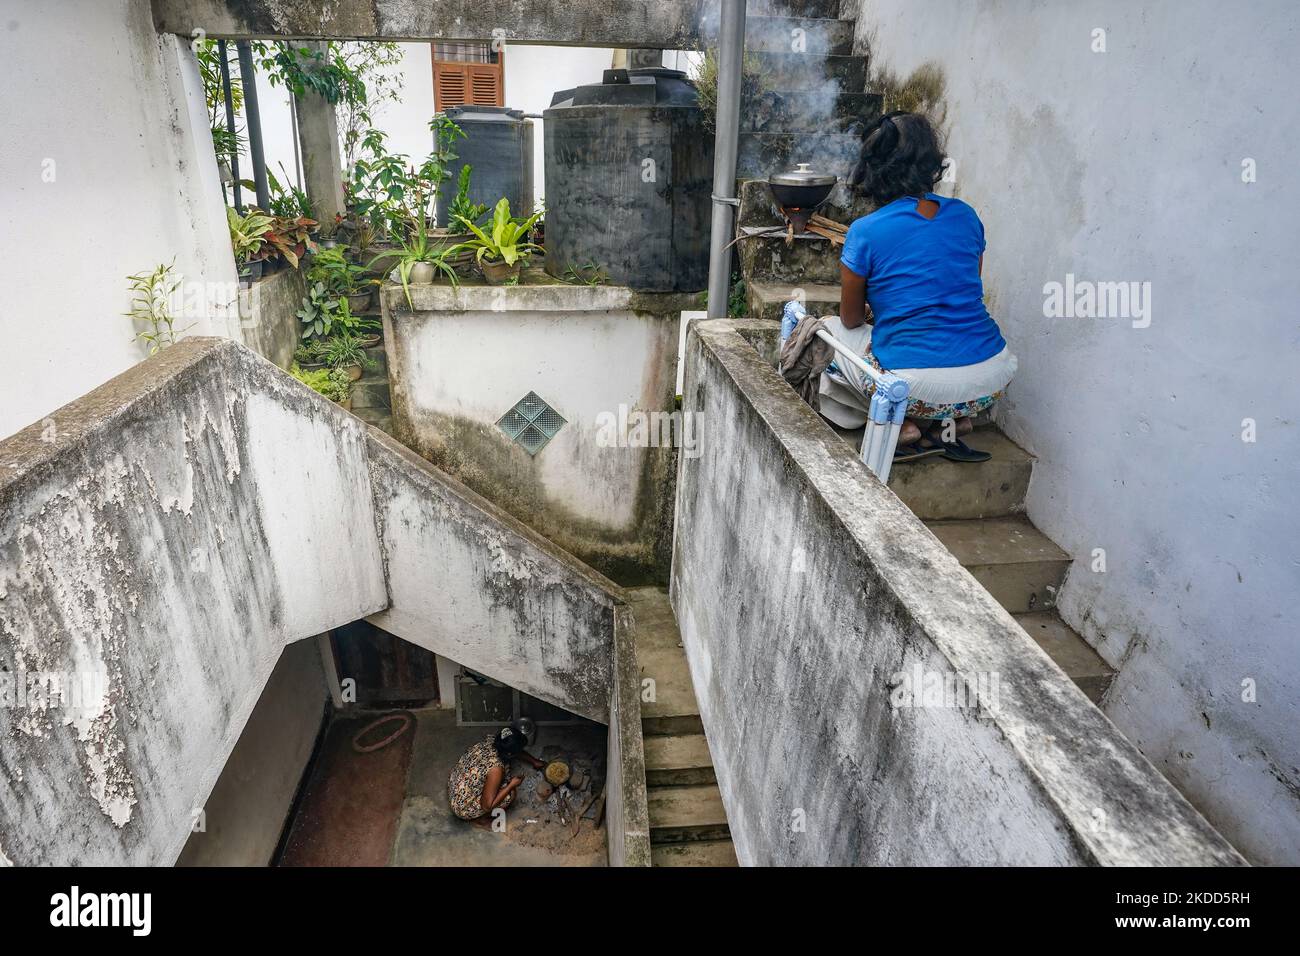 En raison de la grave crise du gaz au Sri Lanka, les personnes vivant dans des appartements dans les zones urbaines sont confrontées à beaucoup de problèmes. En raison du manque de gaz et de l'interdiction d'utiliser des poêles à bois dans les appartements, de nombreux propriétaires d'appartements ont recours à la cuisine extérieure. La photo montre deux femmes vivant dans un complexe de logements Colombo qui cuisent de la nourriture sur les escaliers, à 04 juillet 2022, à Colombo, au Sri Lanka (photo de Thilina Kaluthotage/NurPhoto) Banque D'Images